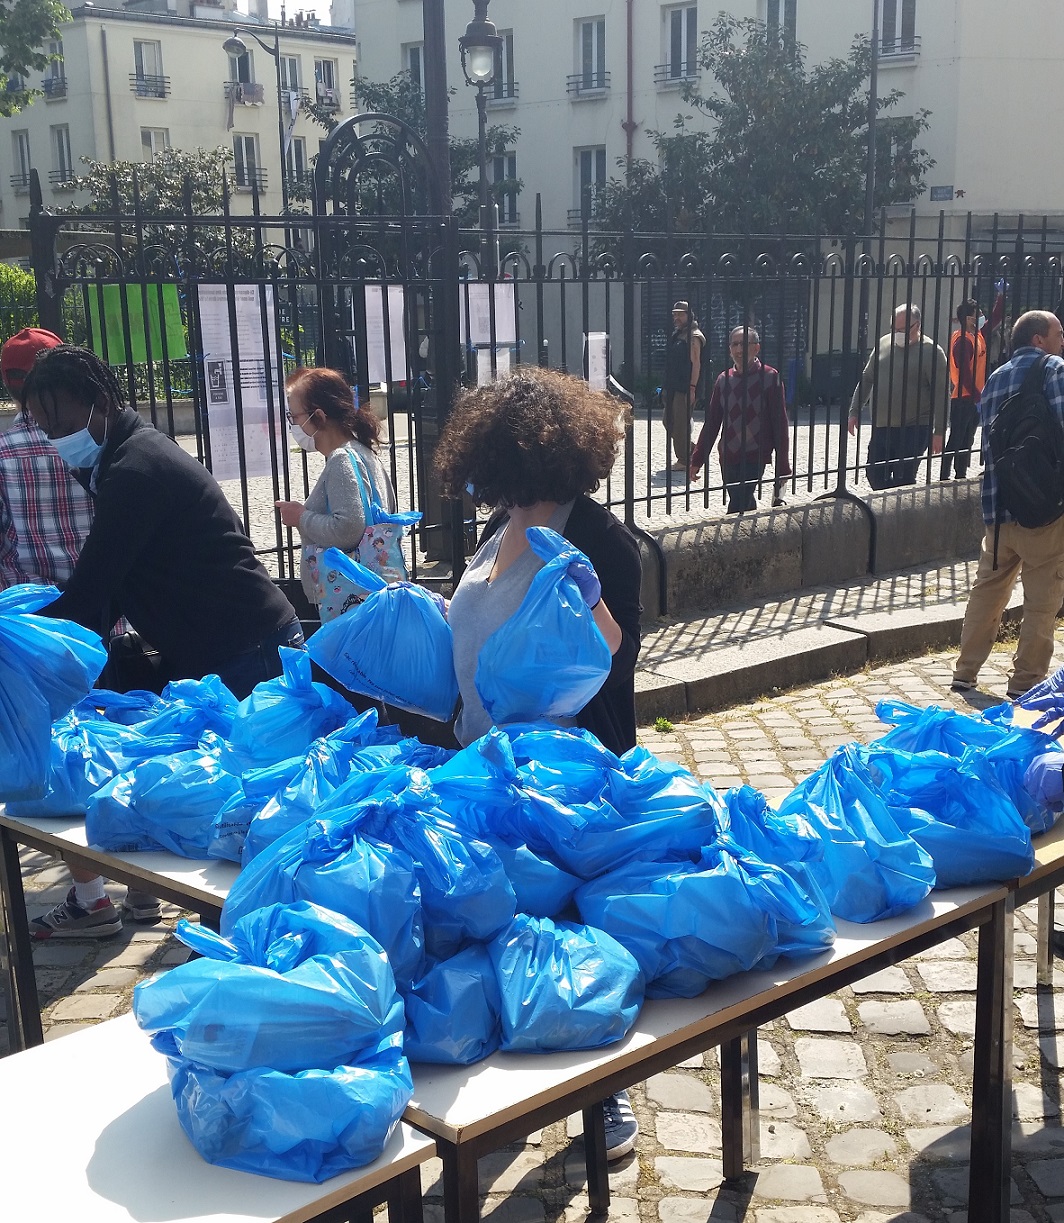 L’association Solidarité Saint-Bernard distribue 600 repas par jour. « C’est incroyable comme le chiffre a augmenté en si peu de temps », déclare son président, Michel Antoine (MEE/Hassina Mechaï)